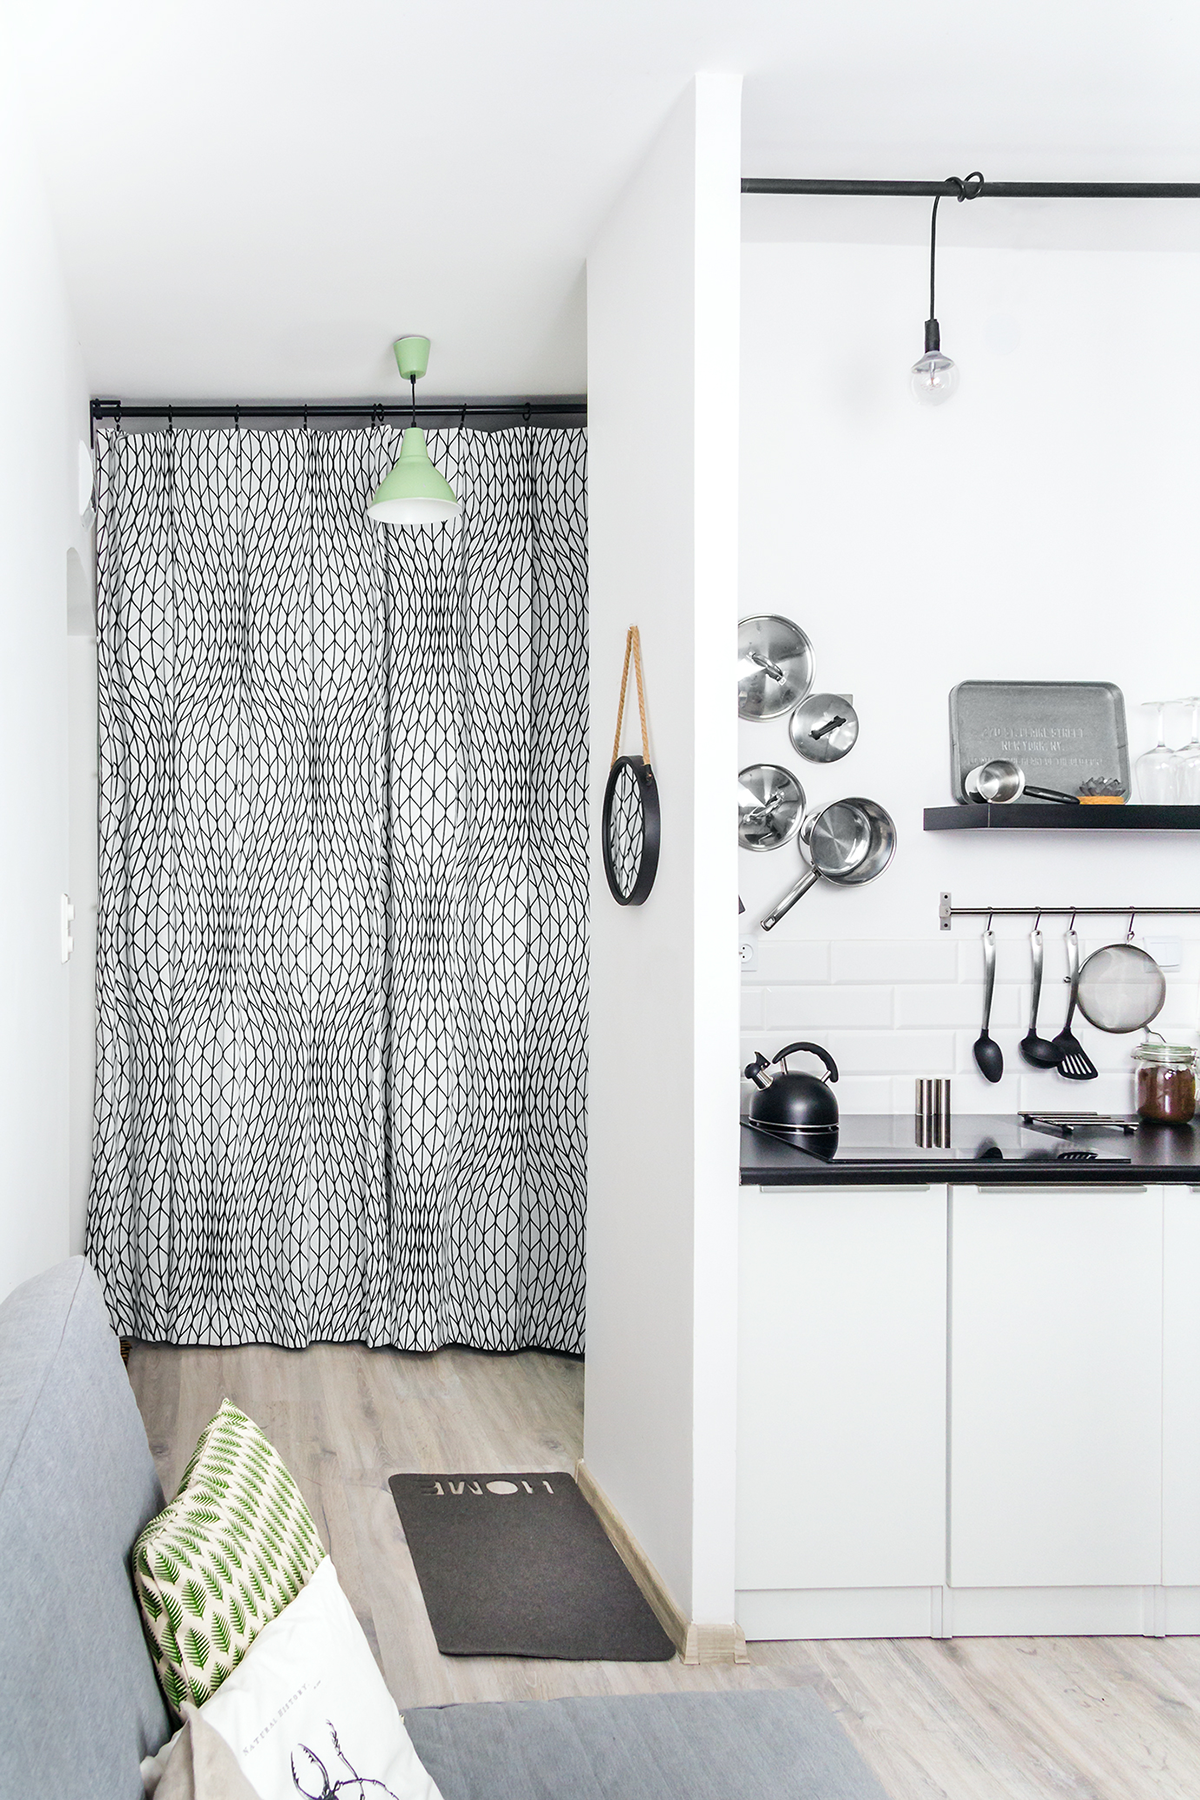 Interior design apartment ideas photos for rent airbnb